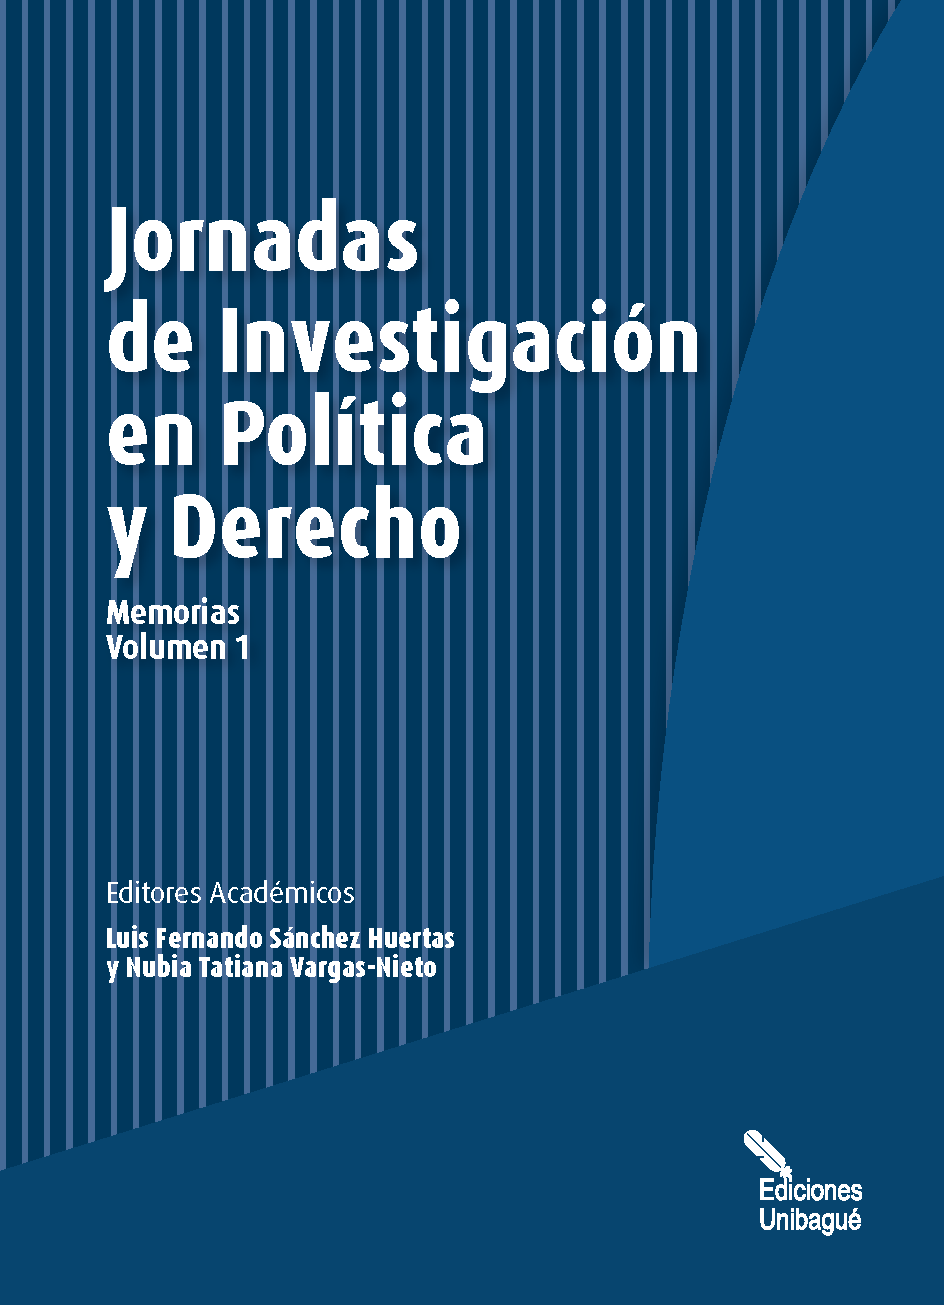 Cover of Jornadas de Investigaciónen Política y Derecho